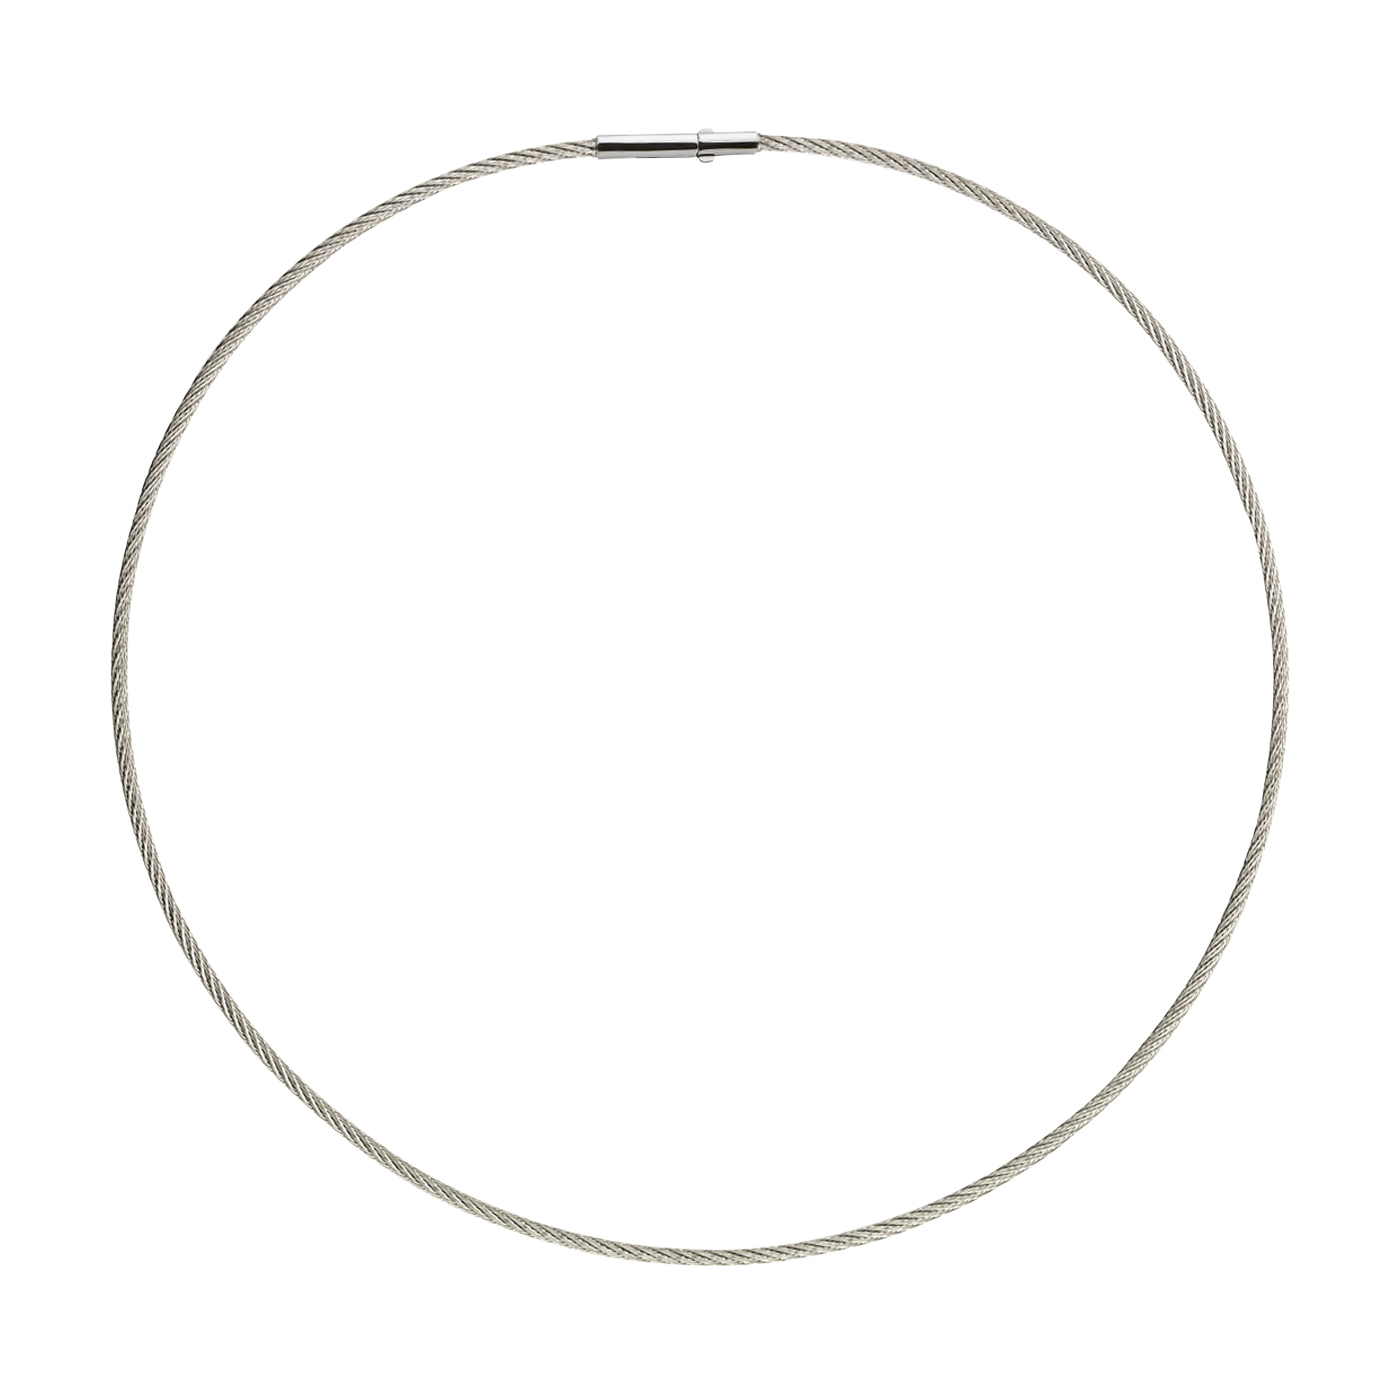 Seilcollier "Soft Cable", ES, ø 1,05 mm, 42 cm, Doppelclip - 1 Stück